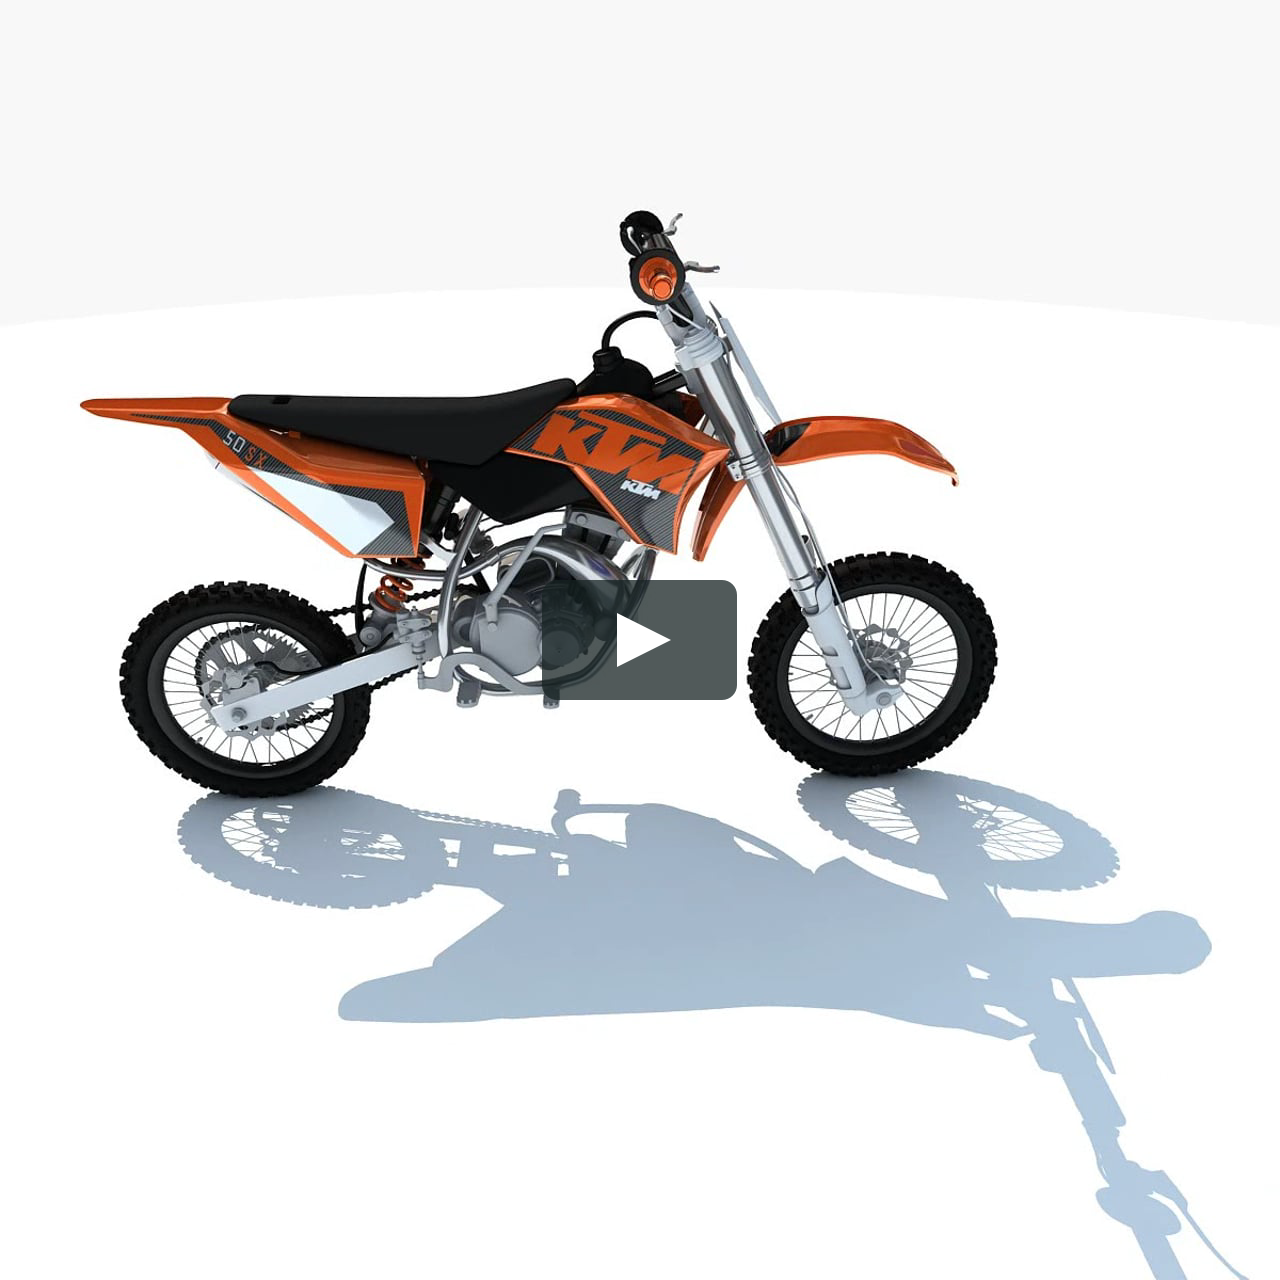 KTM Motocross Racing Bike 3D Model on Vimeo